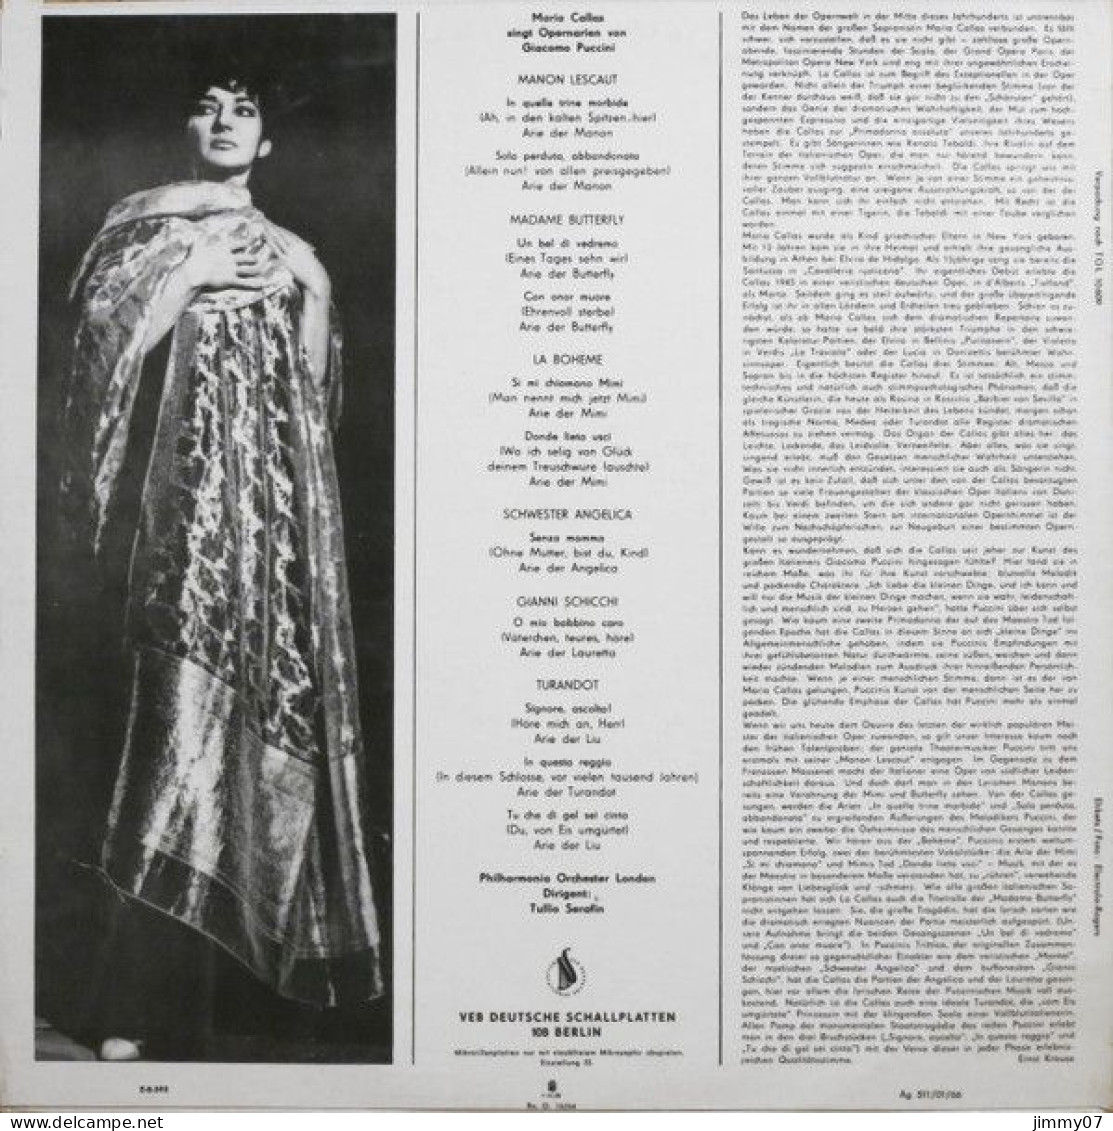 Maria Callas, Giacomo Puccini - Maria Callas Singt Opernarien Von Giacomo Puccini (LP, Mono) - Classical